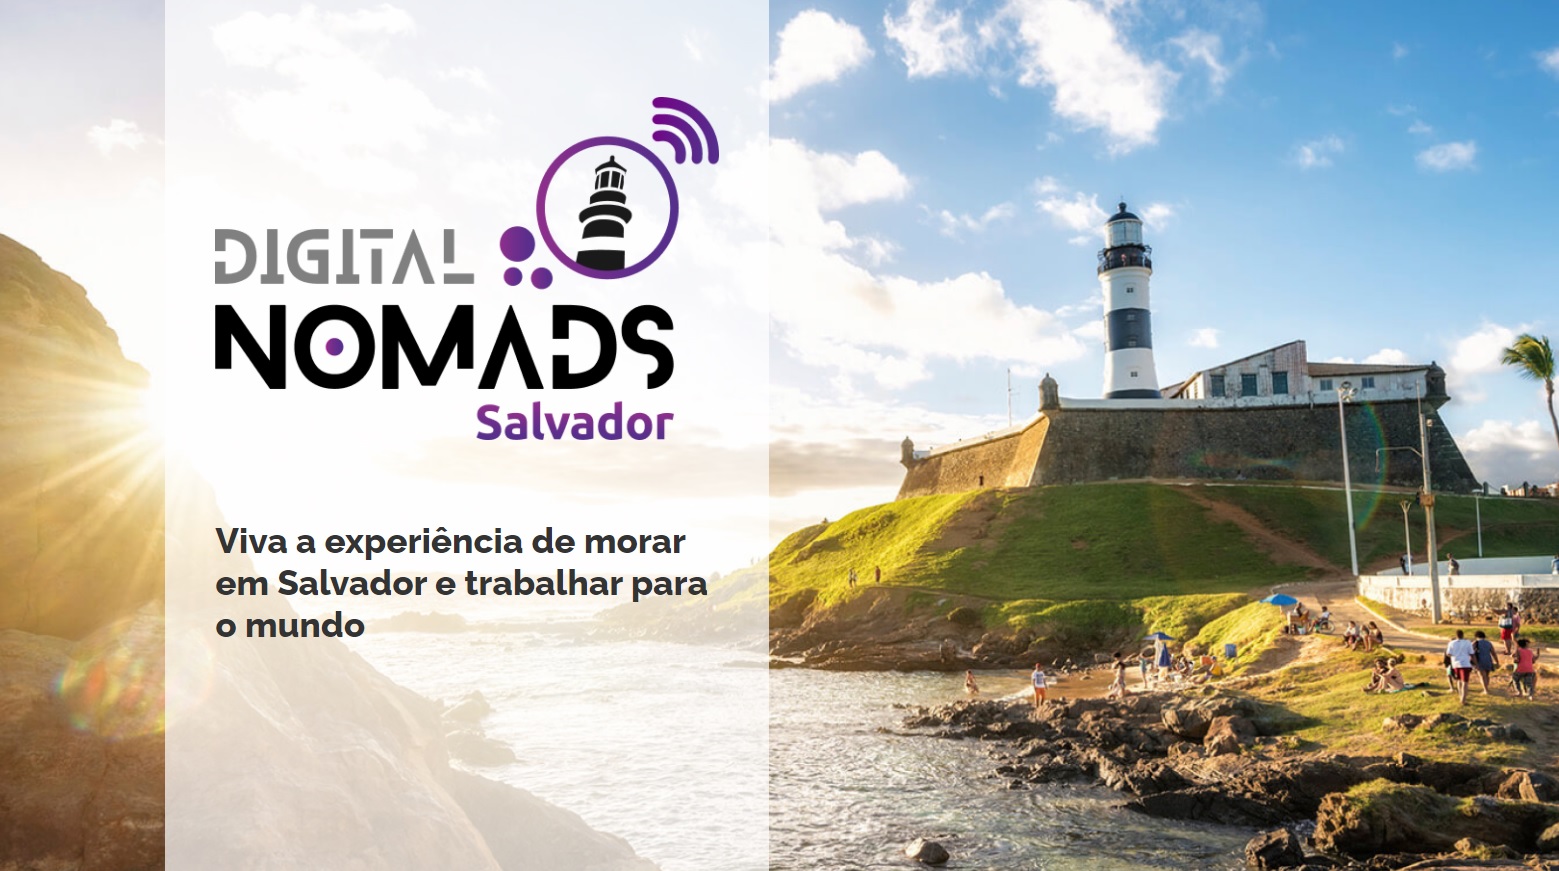 Programa oferece incentivos para atrair nômades digitais a Salvador